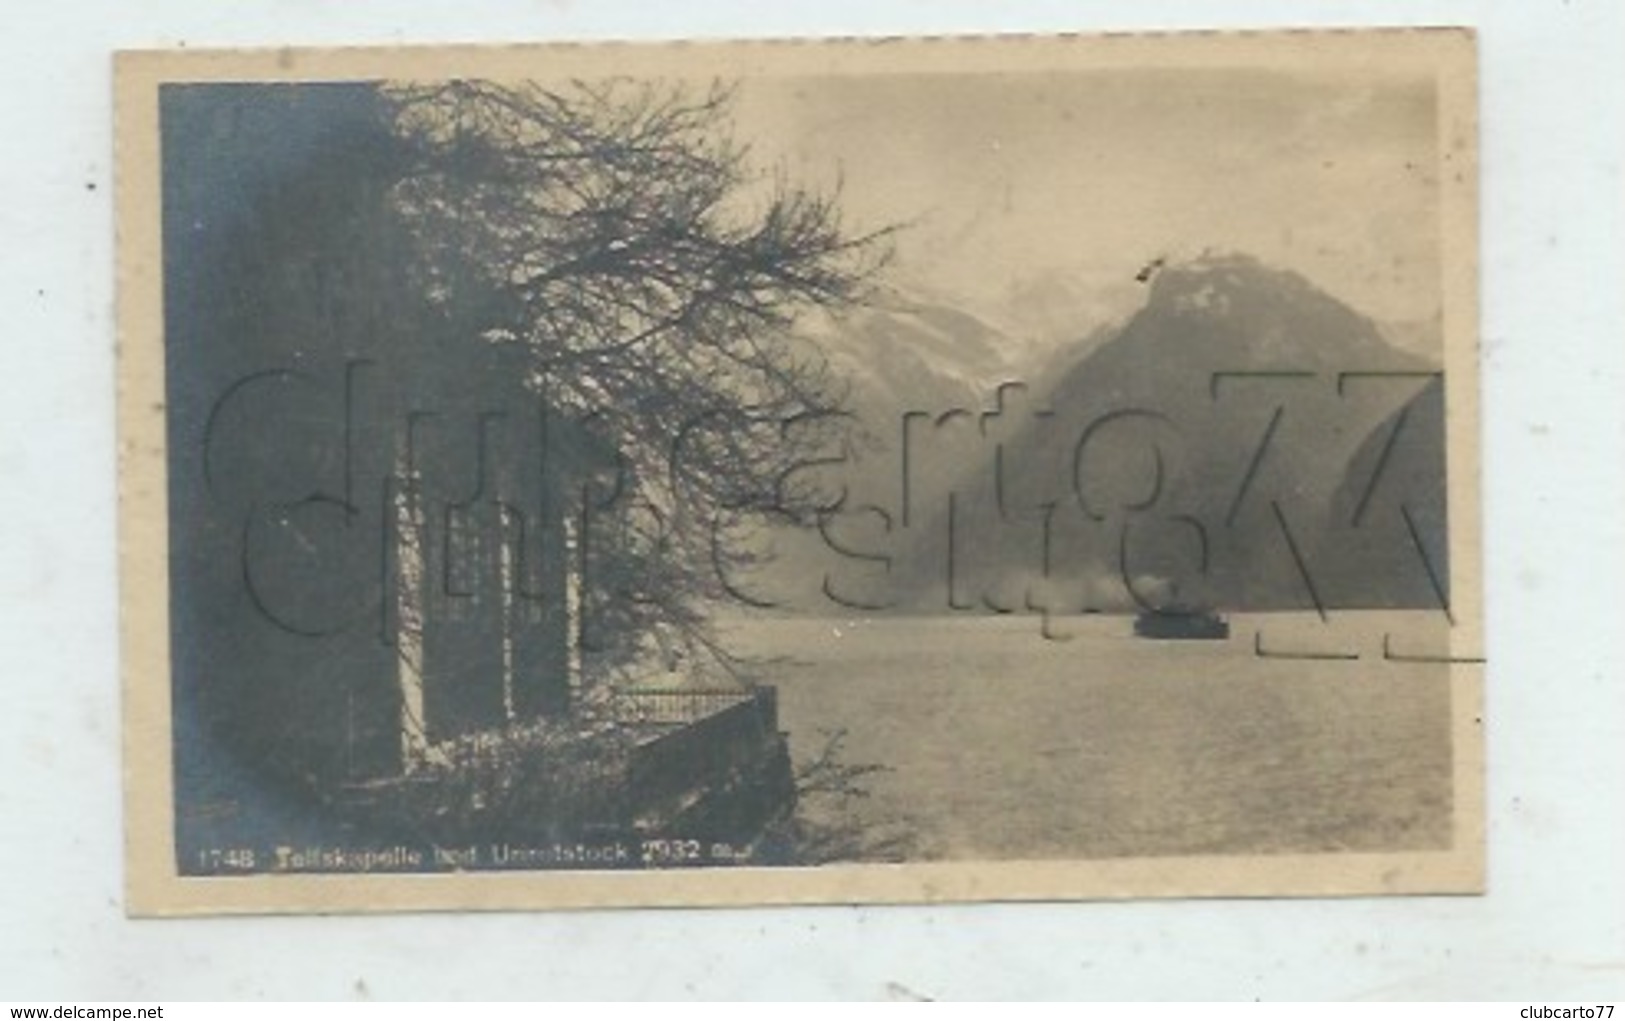 Sisikon (Suisse, Uri) : Tellskapelle Und Urirotstock Im 1930 PF. - Sisikon